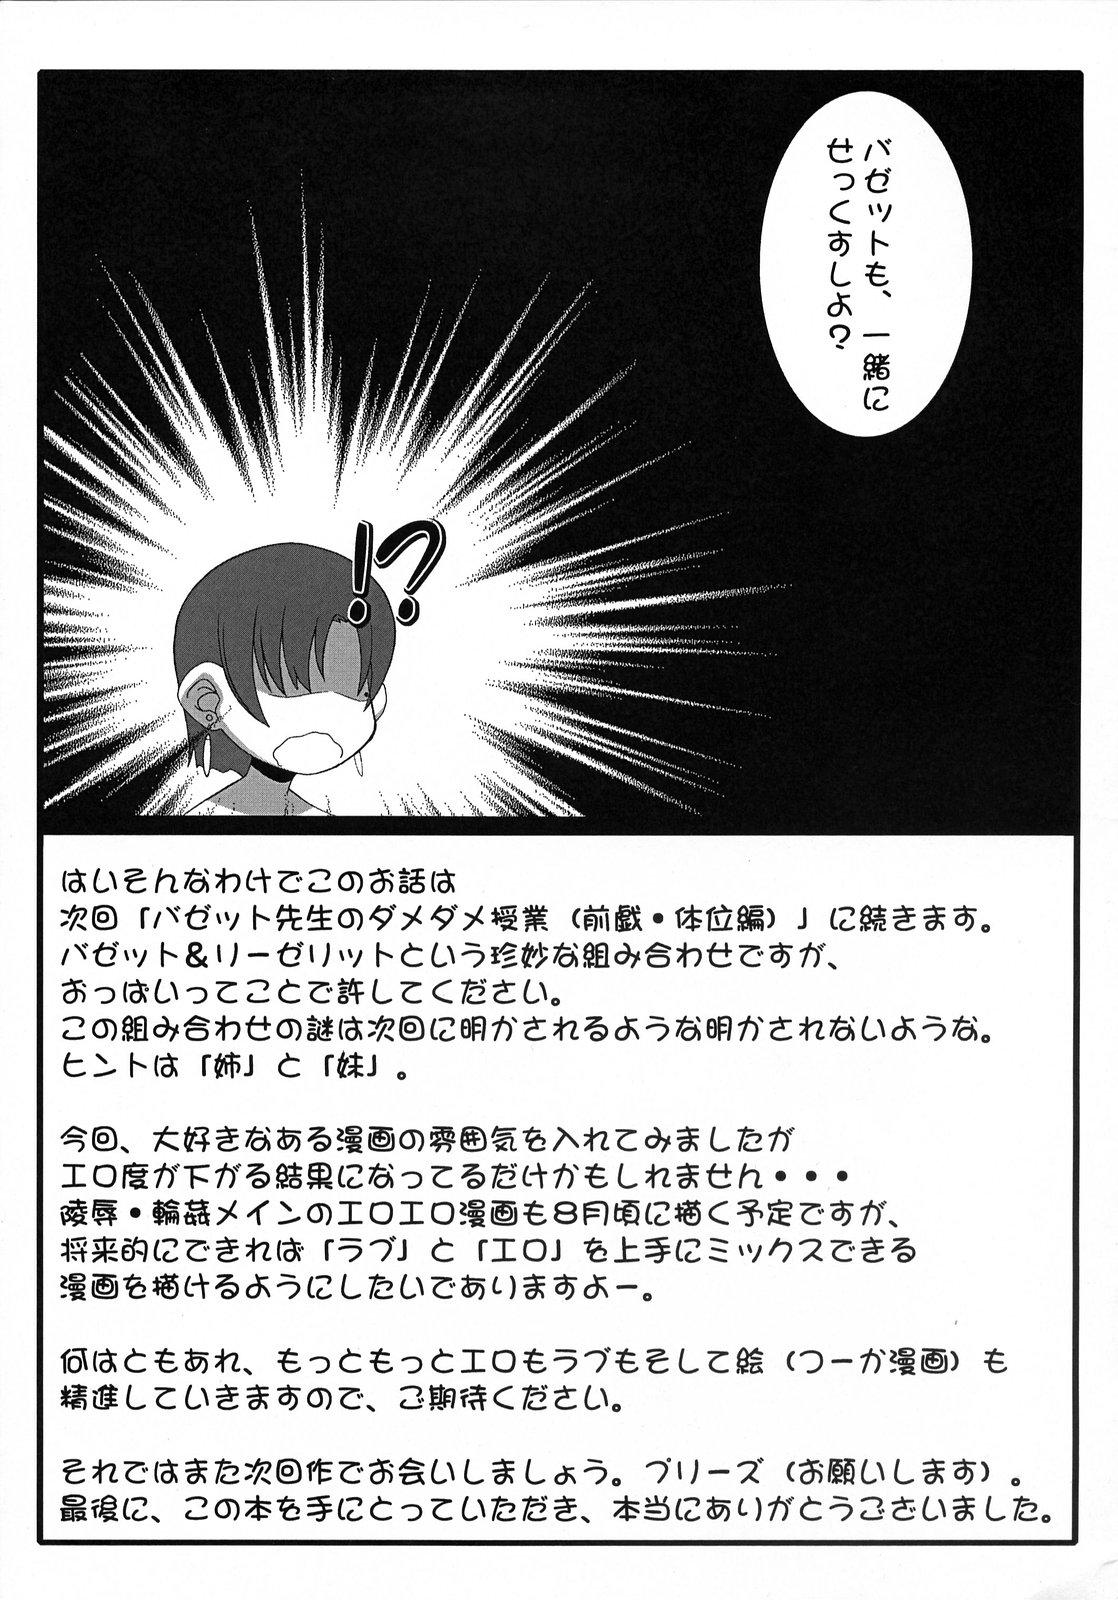 Amazing (SC36) [Gachinko Shobou (Koban)] Yappari Leysritt (kyonyuu no hou)] wa eroi na. (Fate/hollow ataraxia) - Fate stay night Fate hollow ataraxia Blow Jobs Porn - Page 19